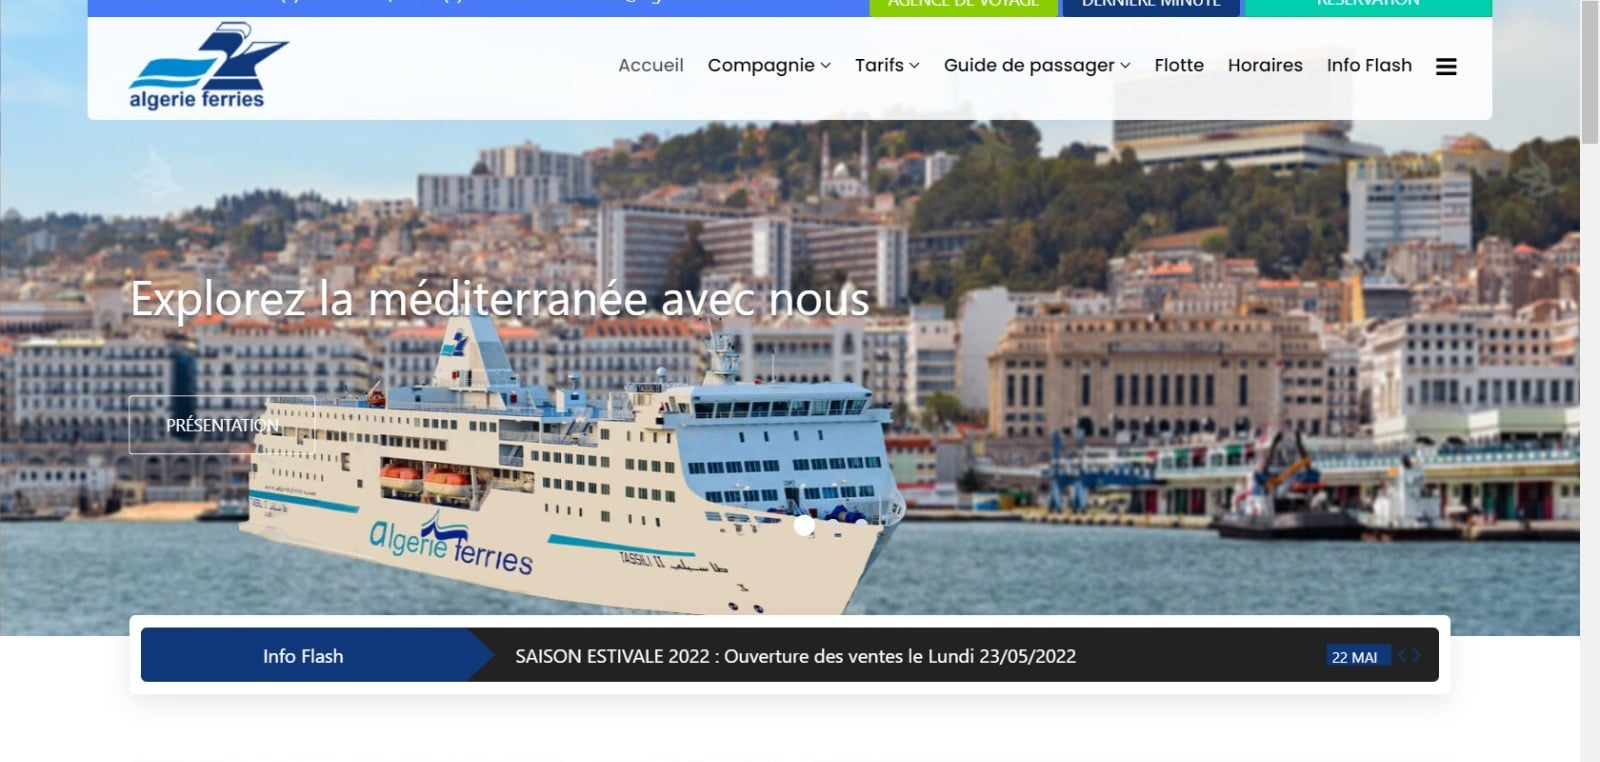 النقل البحري شروط السفر إلى الجزائر